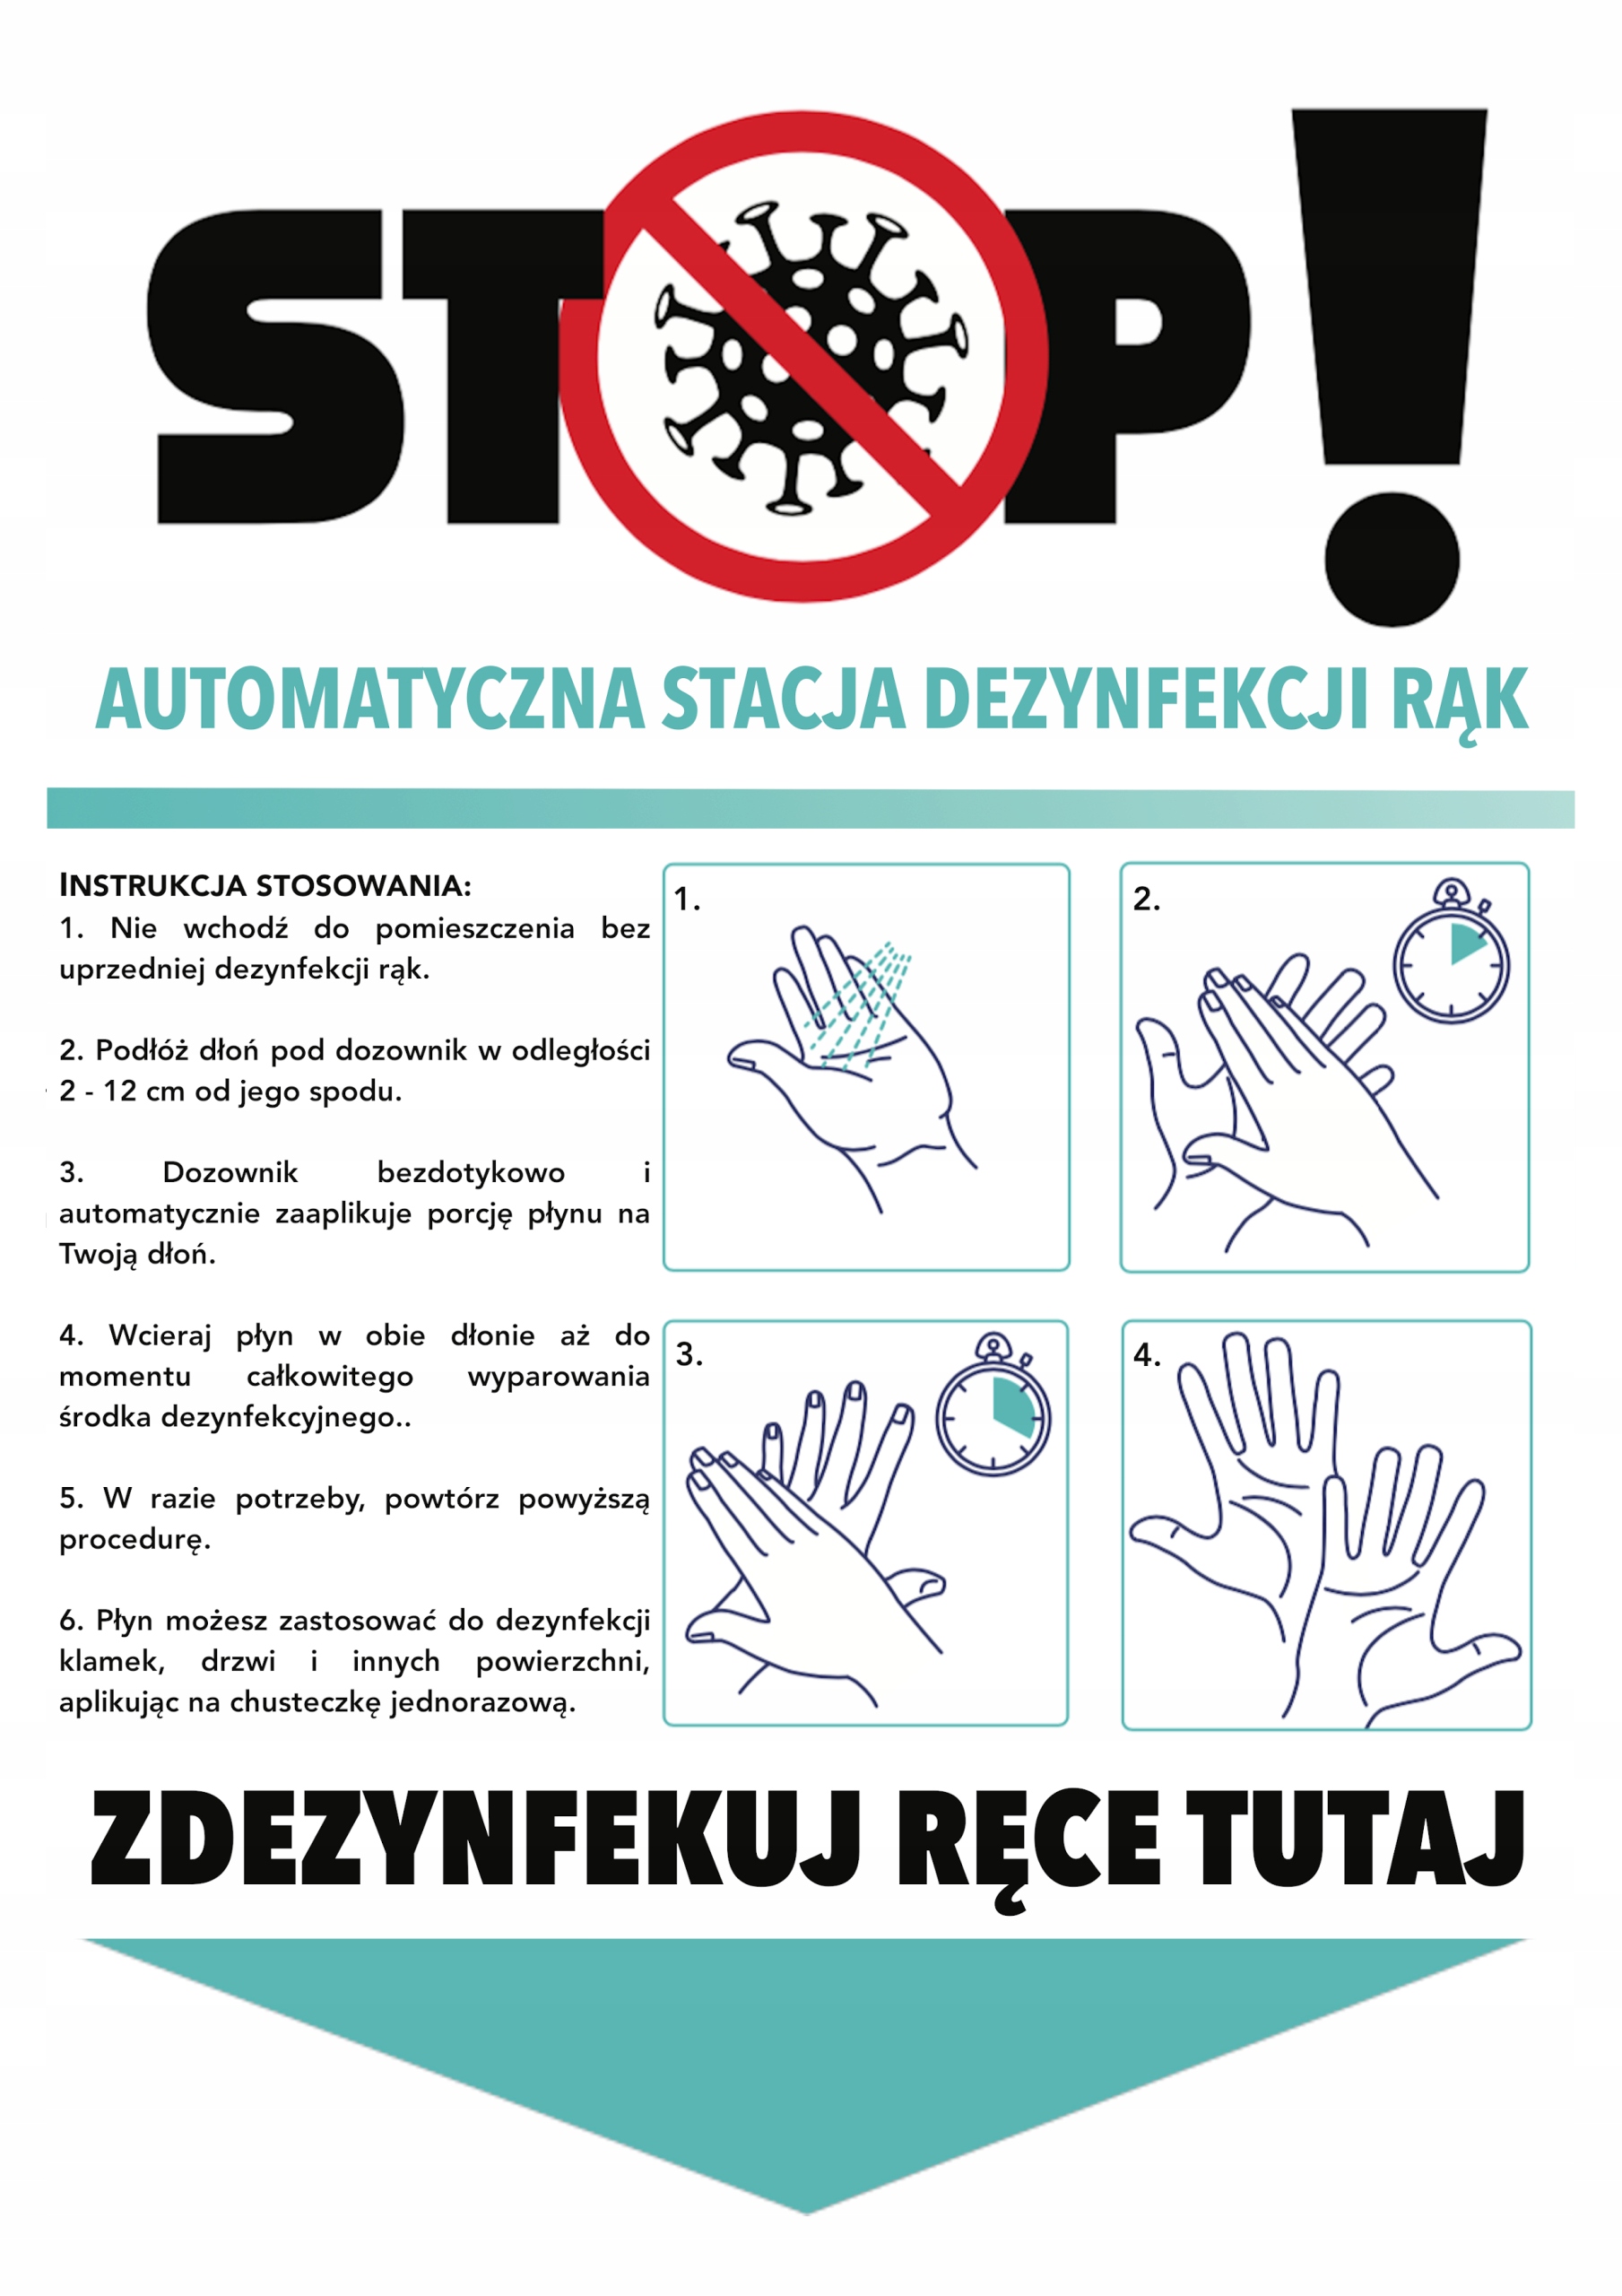 Automatyczna stacja dezynfekcji rąk - instrukcja dezynfekcji rąk